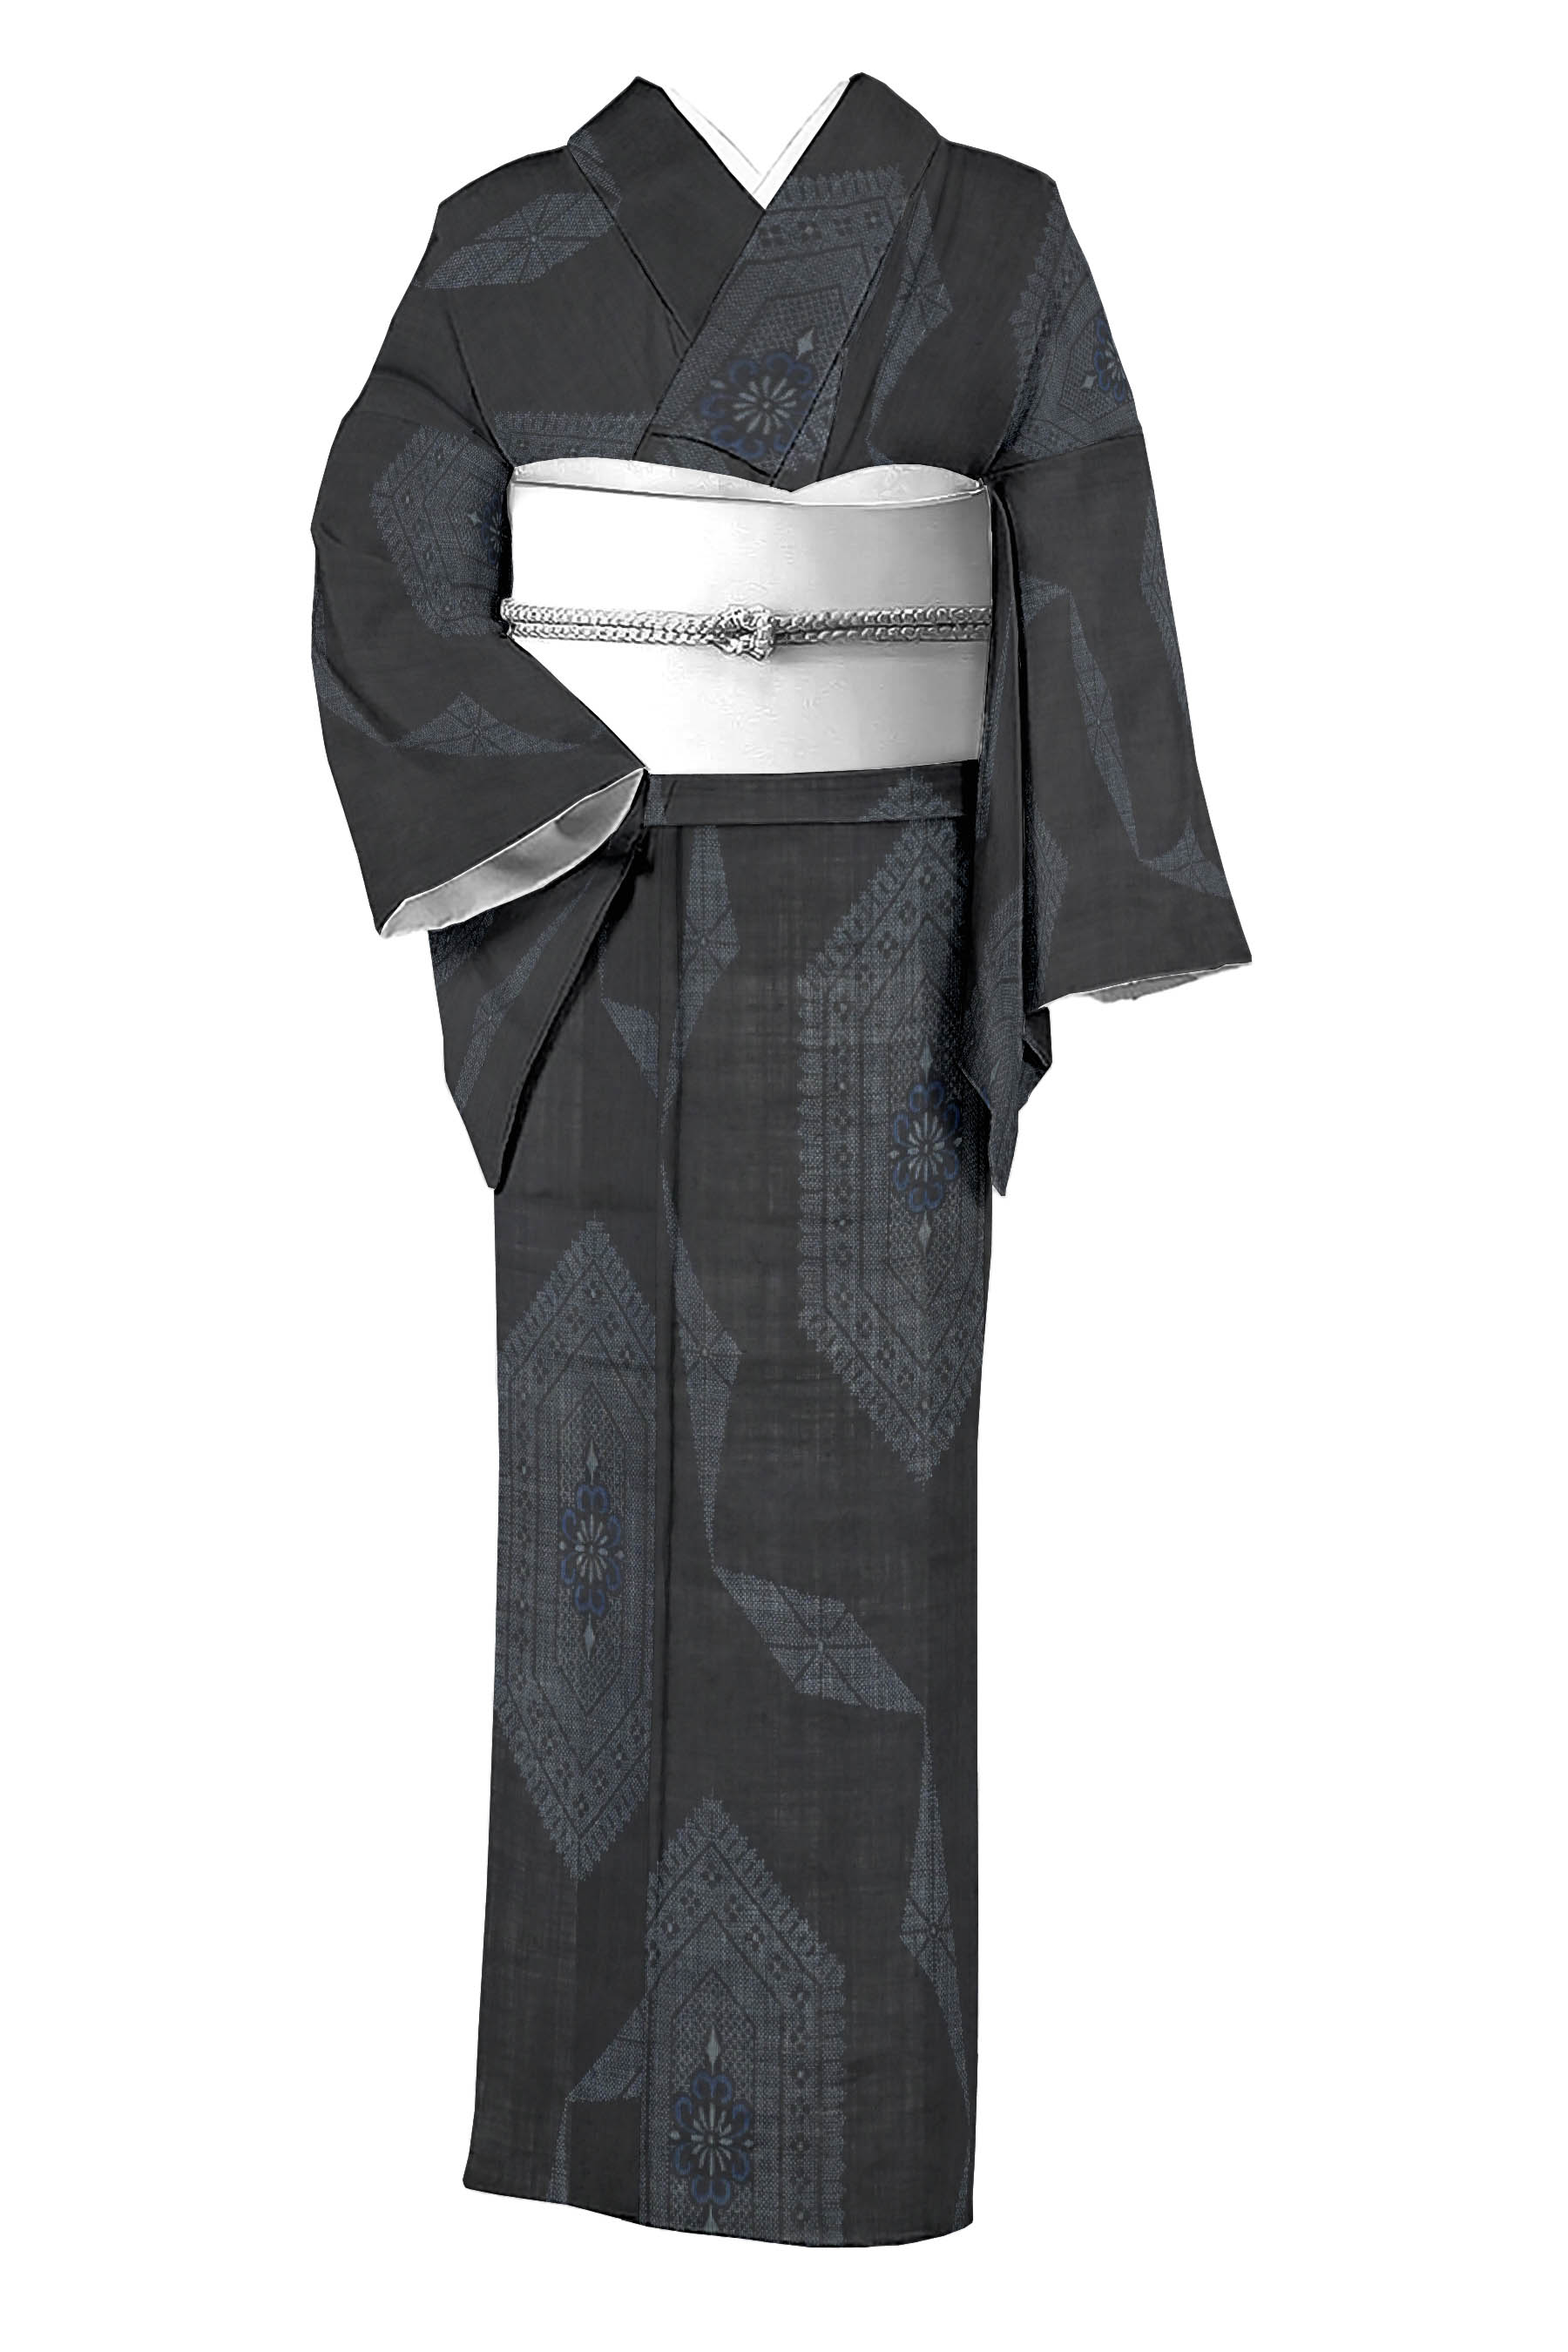 独創的 夏用 宮古上布 絣と四角模様の小紋 着物 レディース